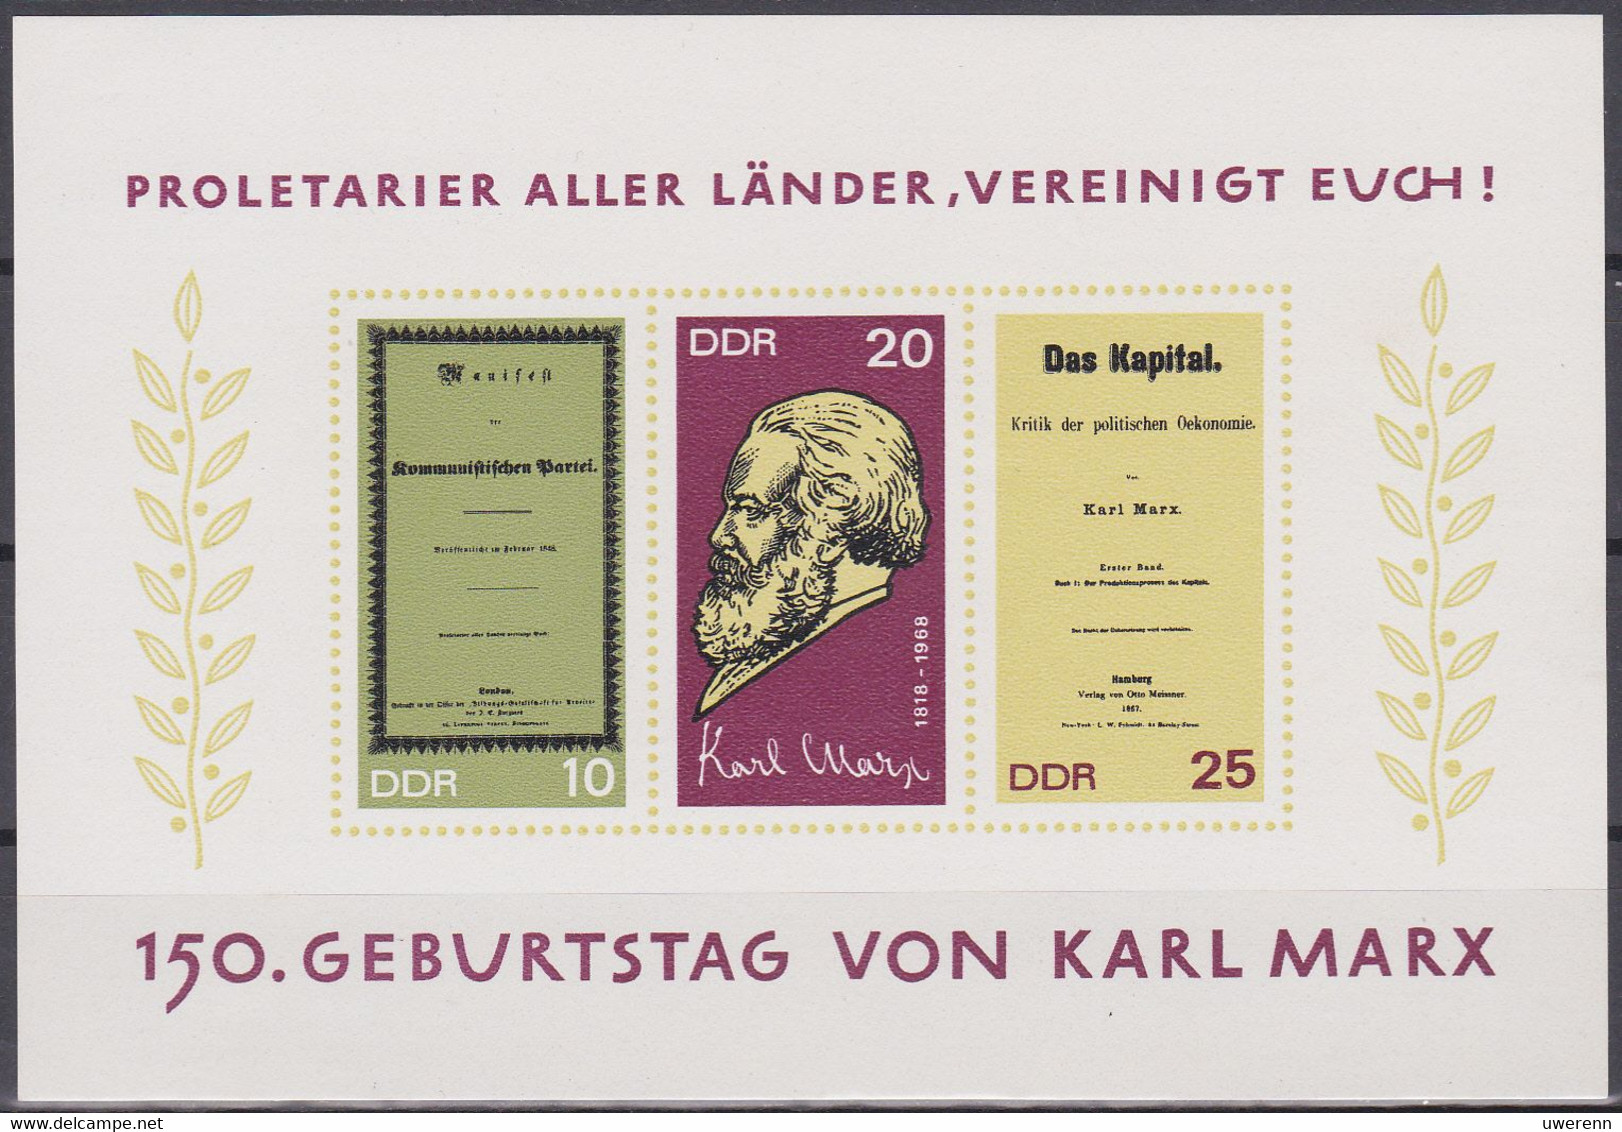 DDR 1968. 150. Geburtstag Karl Marx: Komm. Manifest/Porträt/Das Kapital, Block 27 Postfrisch (MNH) - Karl Marx